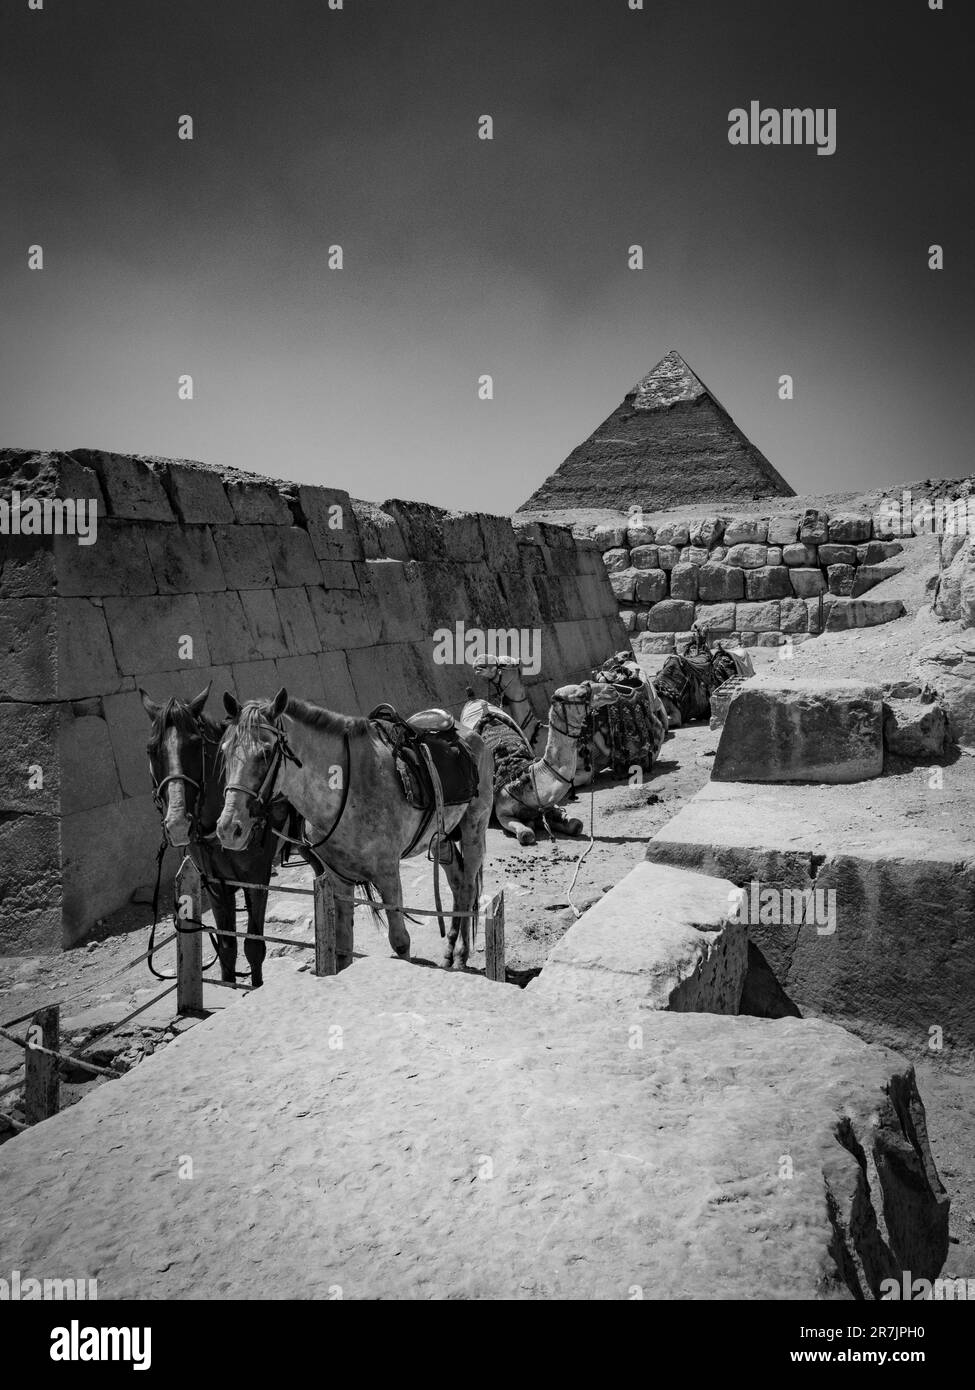 Las pirámides icónicas de Egipto y la historia antigua cobran vida en Monoc Foto de stock